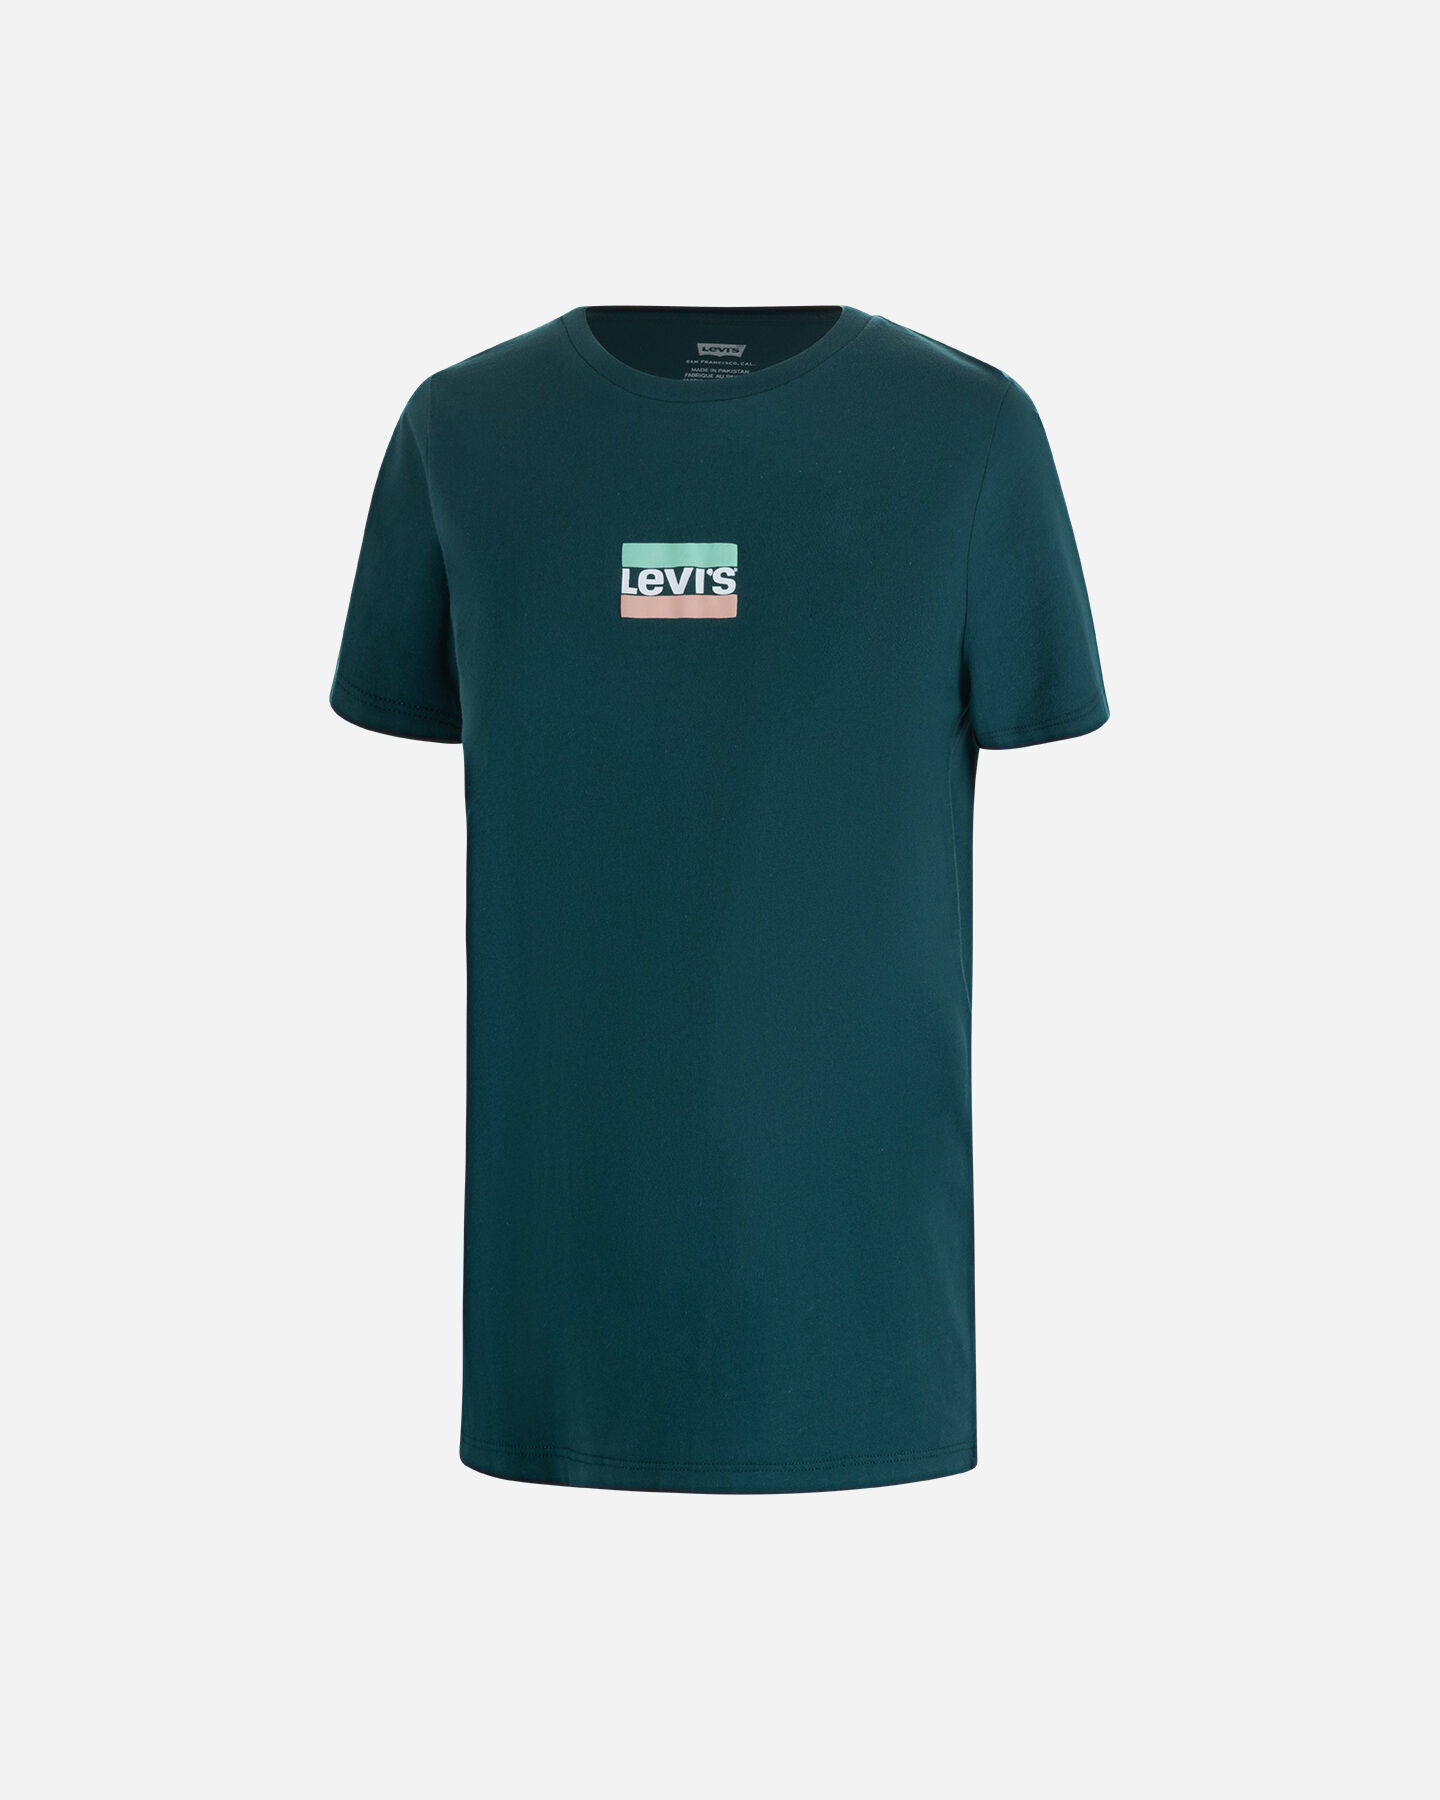  T-Shirt LEVI'S BLOCCHETTO LOGO W S4119861|2028|XS scatto 0